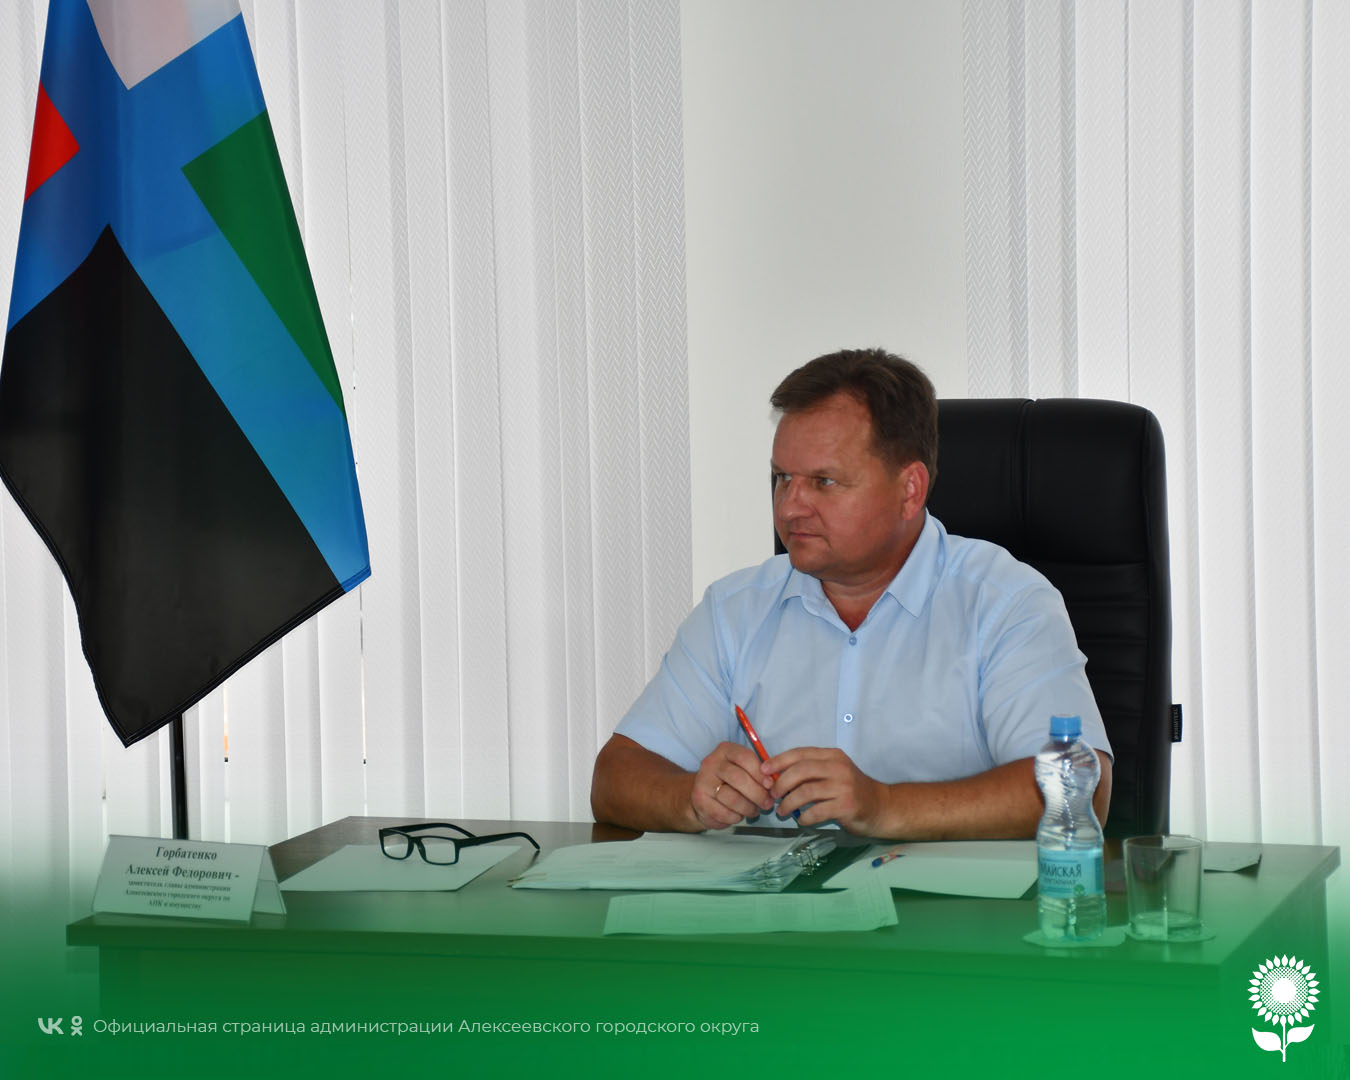 Сегодня исполняющий обязанности главы администрации Алексеевского городского округа Алексей Федорович Горбатенко провёл личный приём граждан